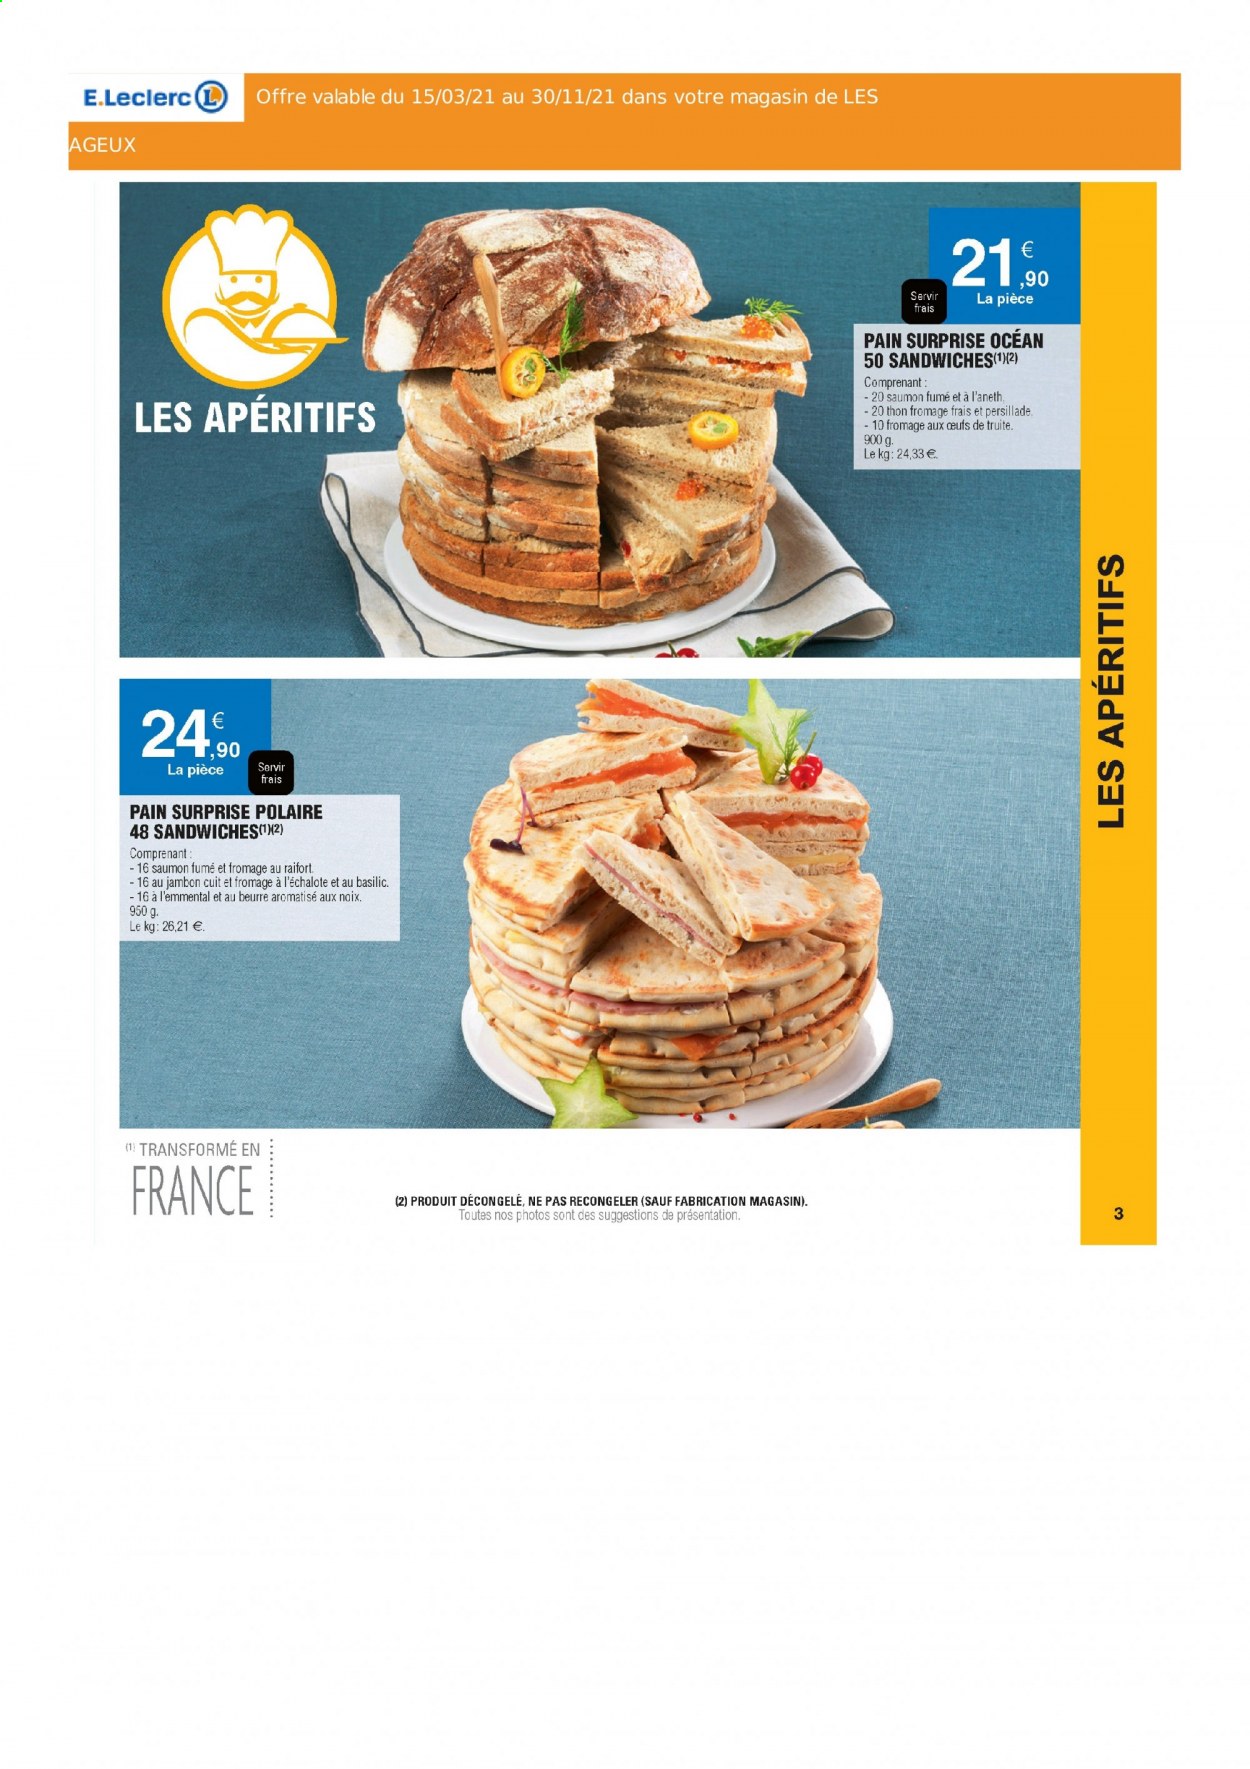 thumbnail - Catalogue E.Leclerc - Produits soldés - raifort, pain, Pain Surprise, truite, fromage frais. Page 3.